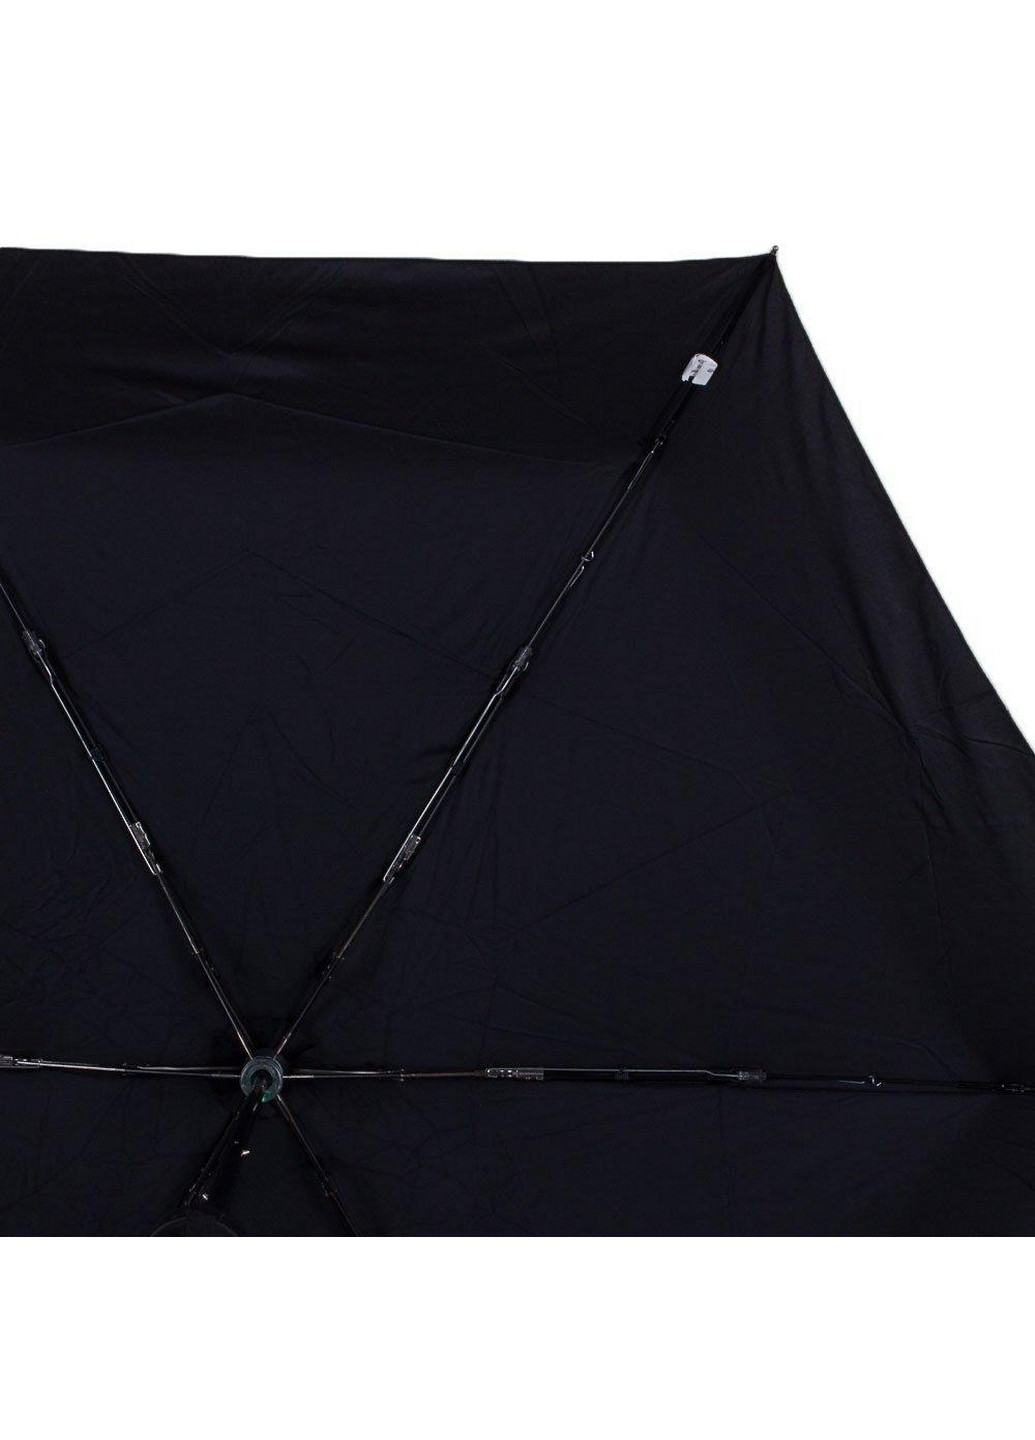 Женский складной зонт механический 93 см Fulton (260330445)